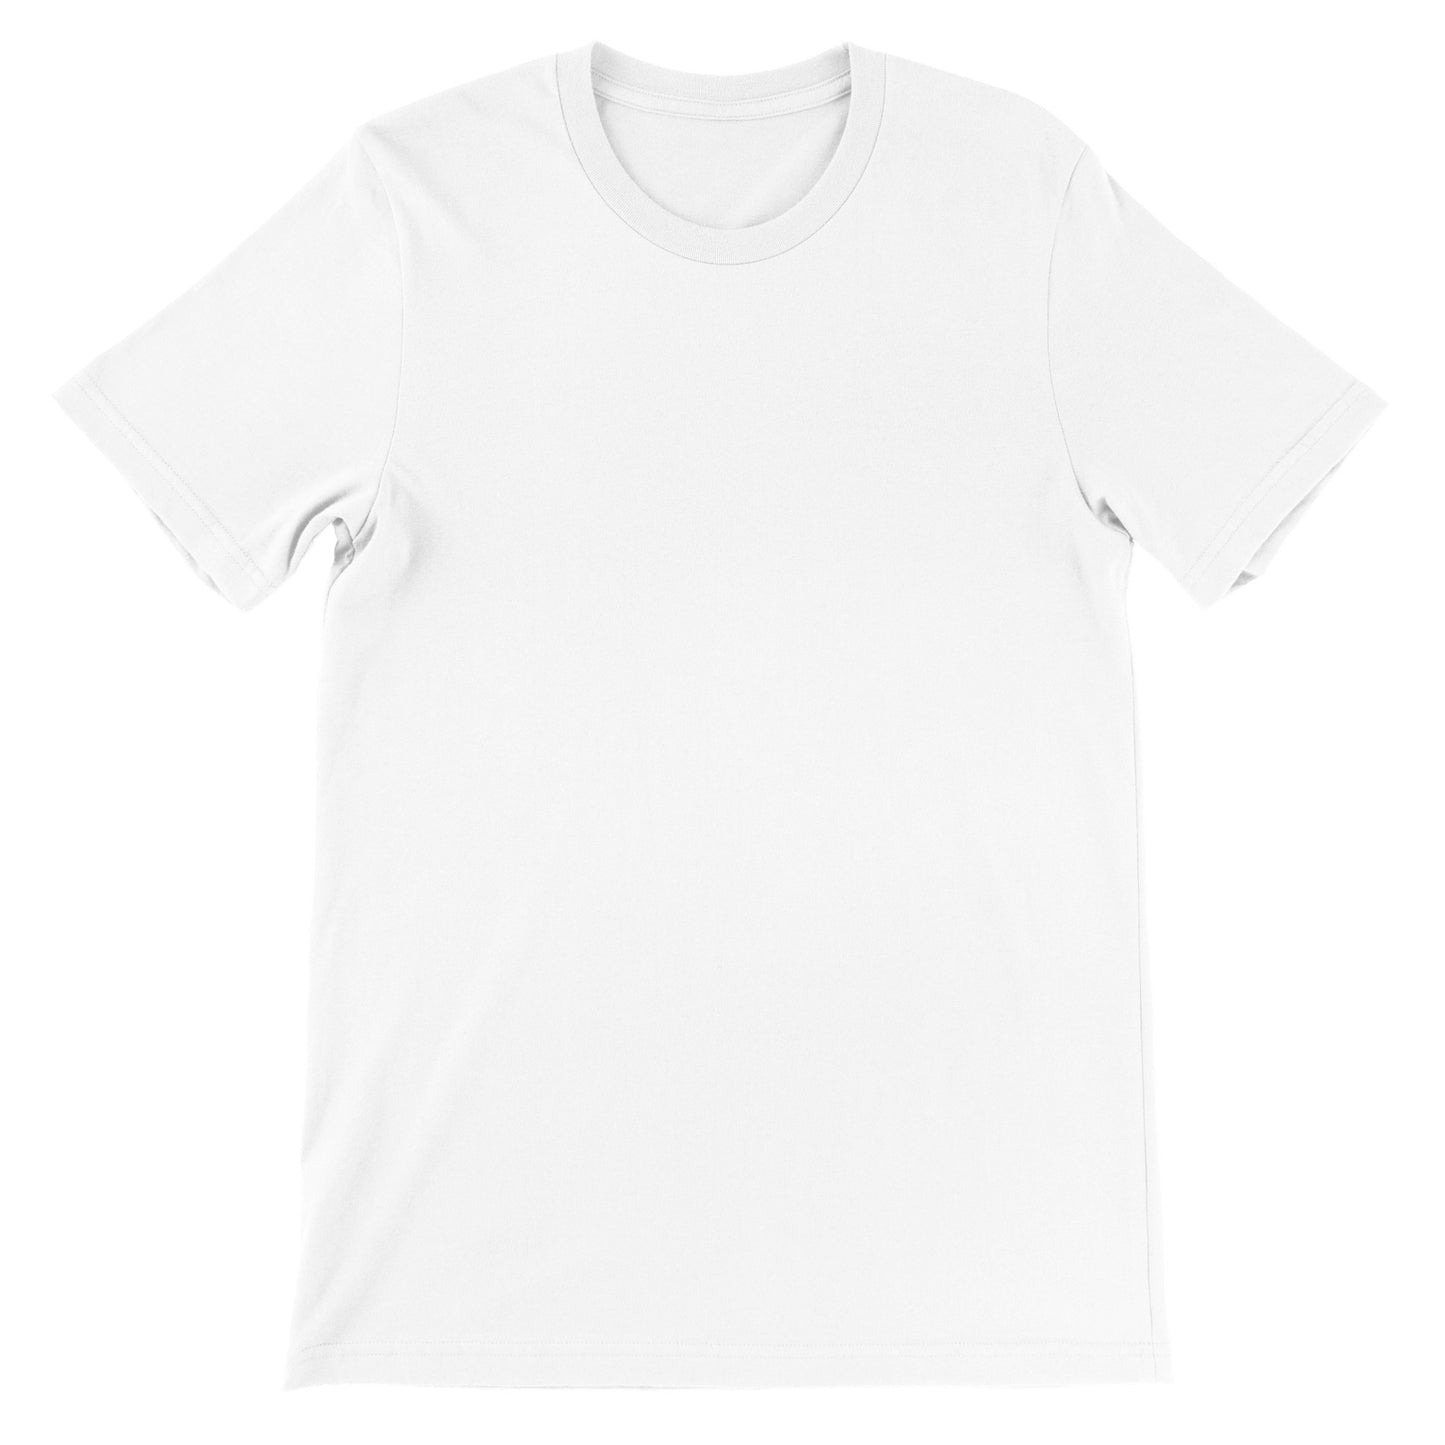 Ist es zu Laut bist du zu Alt - Premium Männer / Unisex T-Shirt mit Rundhalsausschnitt